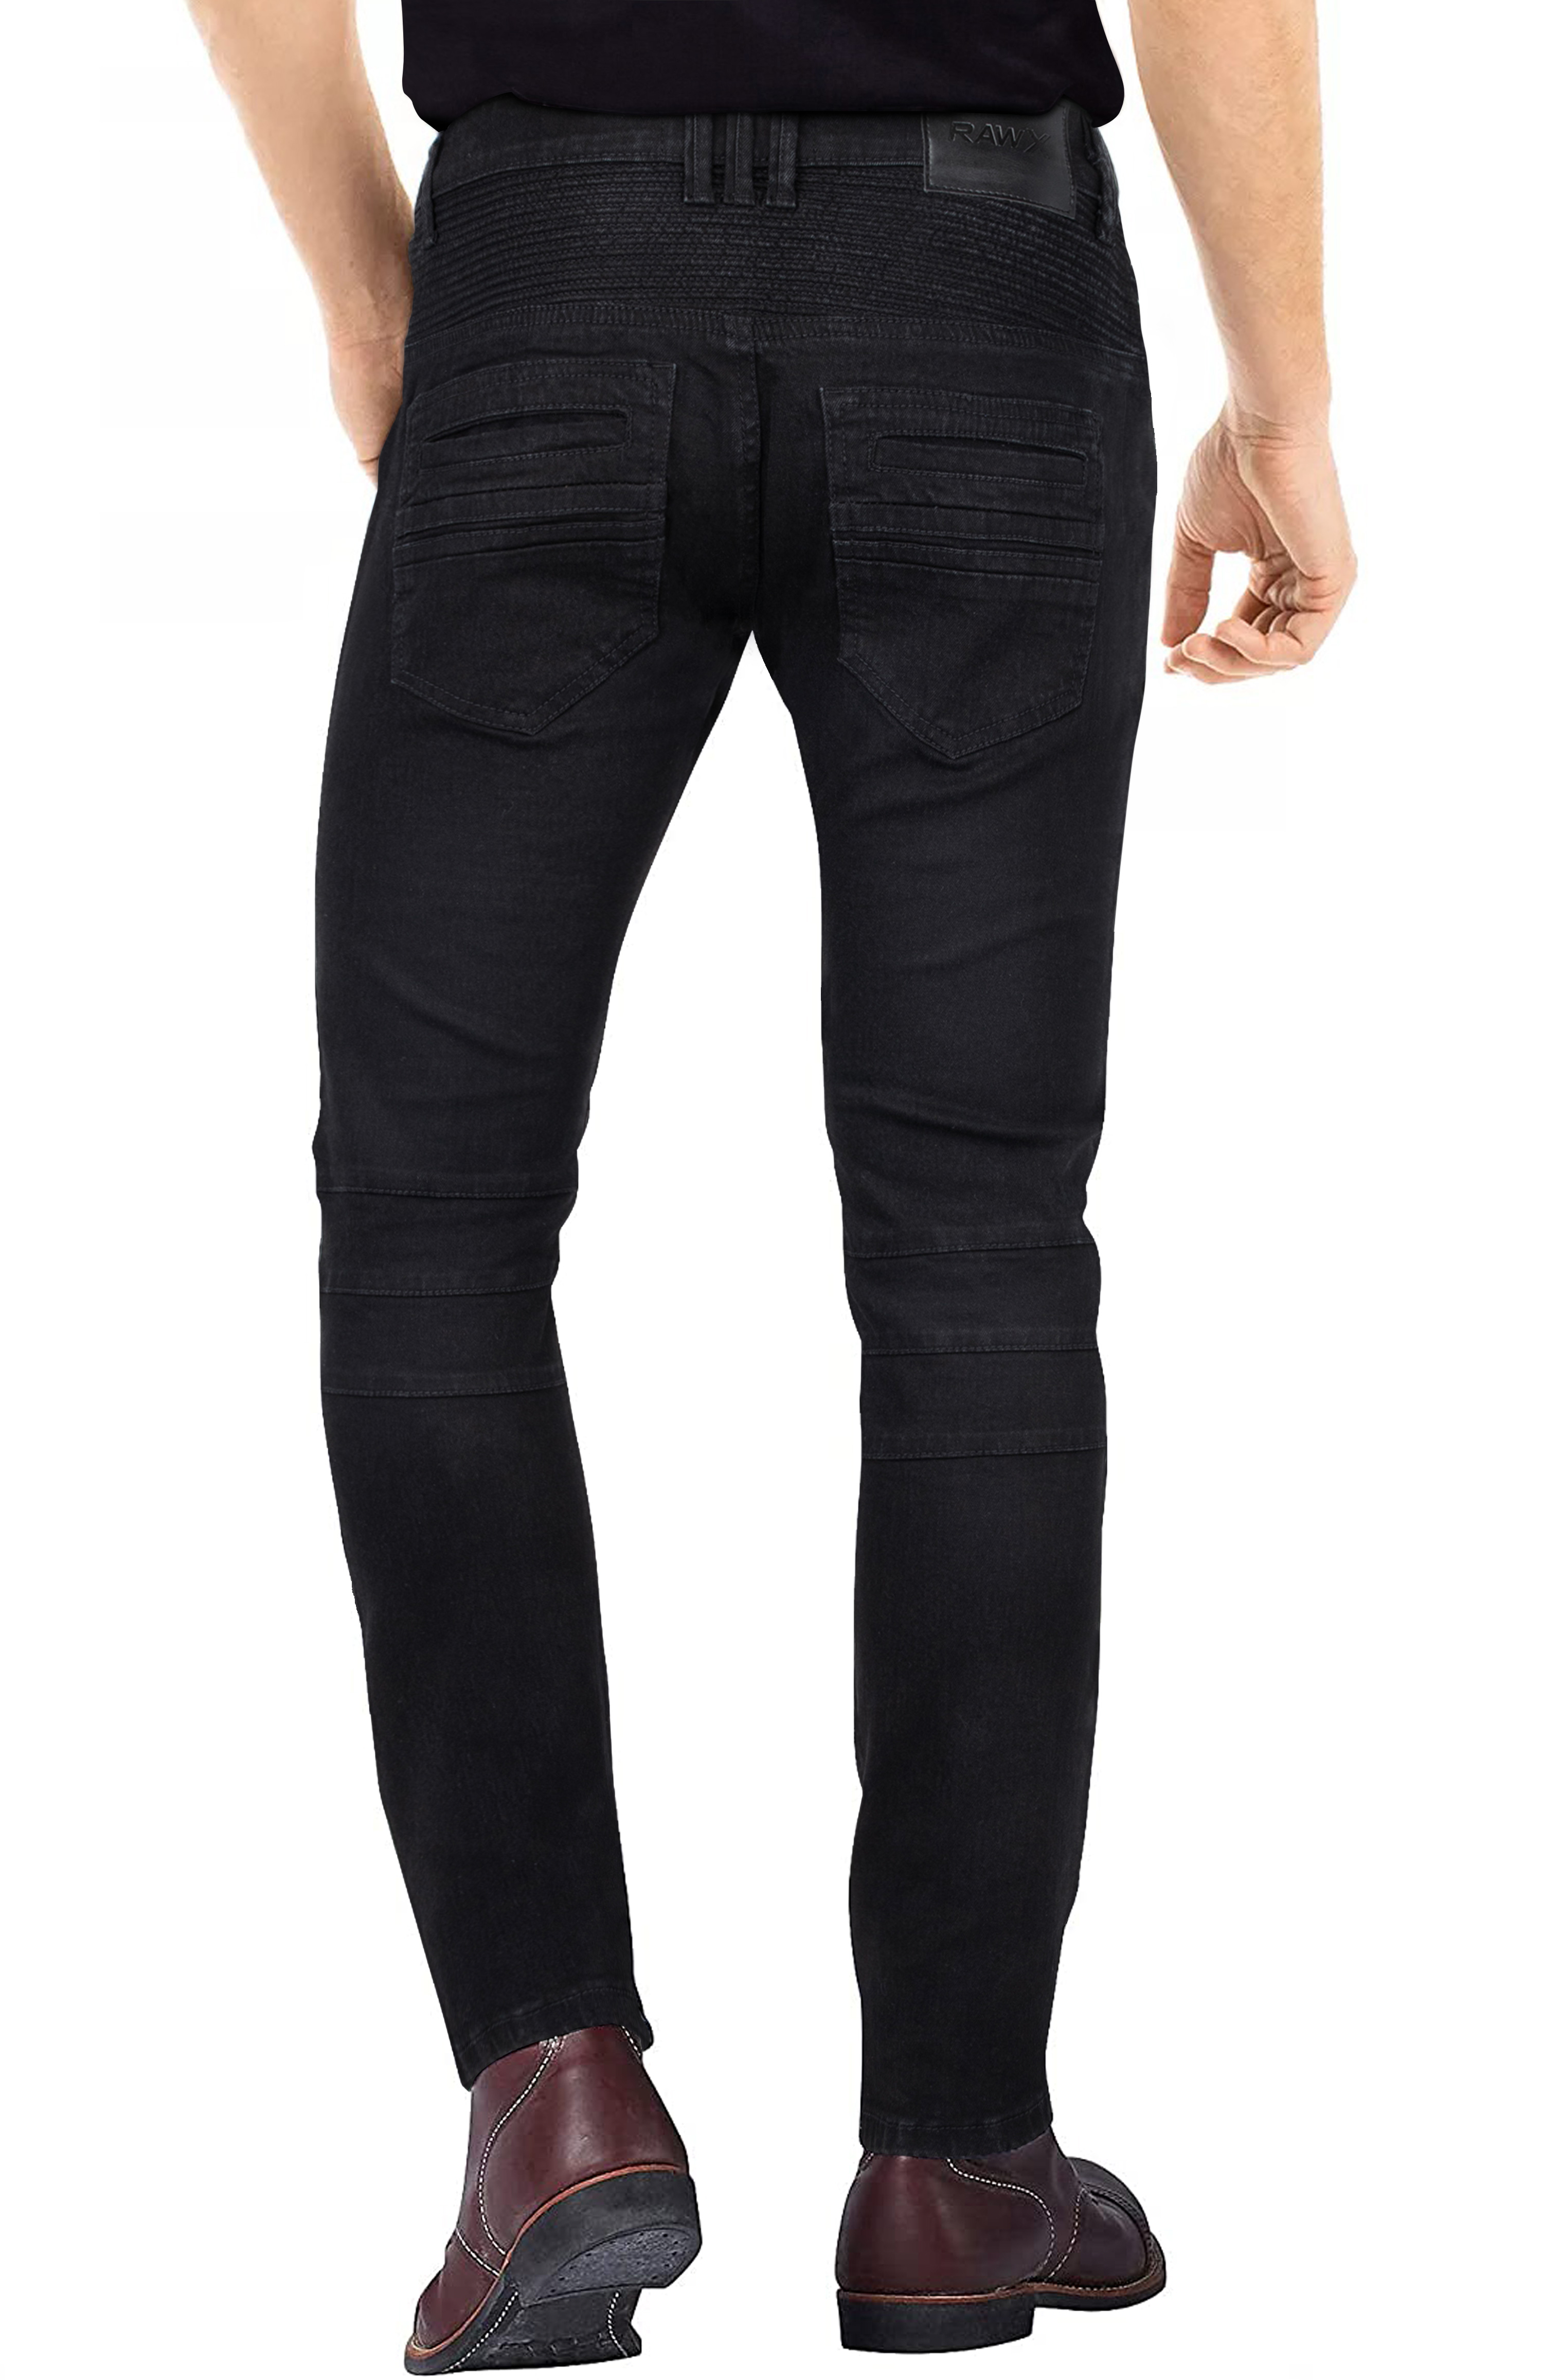 RAW X Men's Slim Fit Skinny Biker Jean, Comfy Flex Stretch Moto Wash Rip Distressed Denim Jeans Pants - image 2 of 8